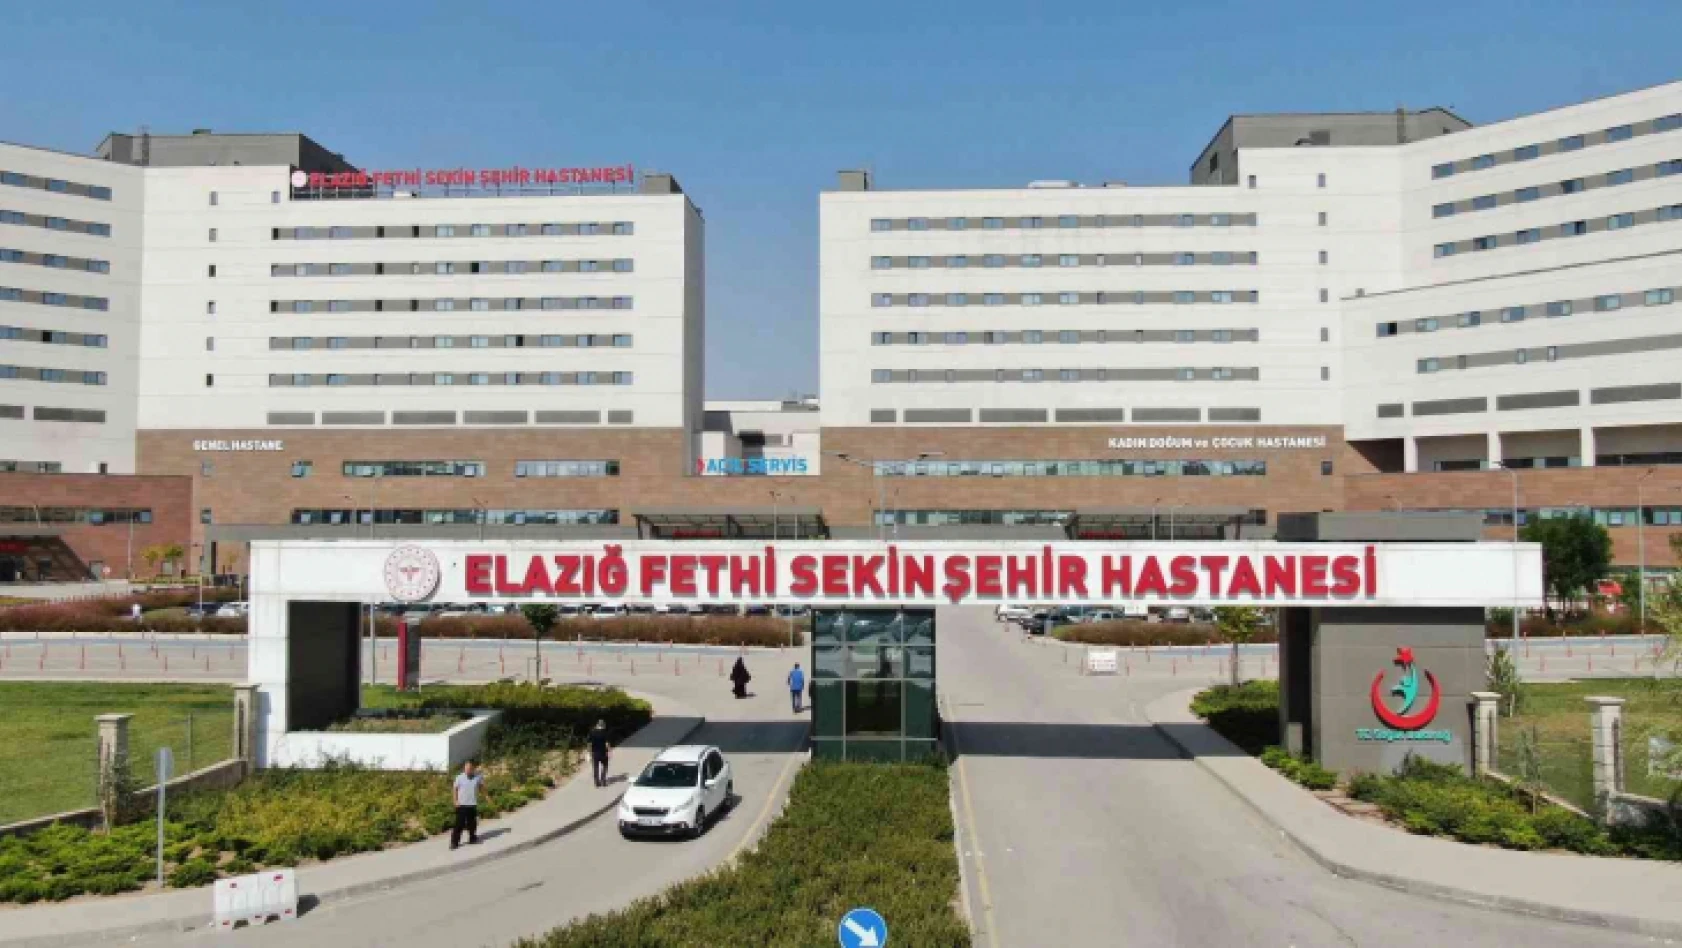  Fethi Sekin Şehir Hastanesi'nde, mesai sonrası poliklinik hizmeti başlıyor